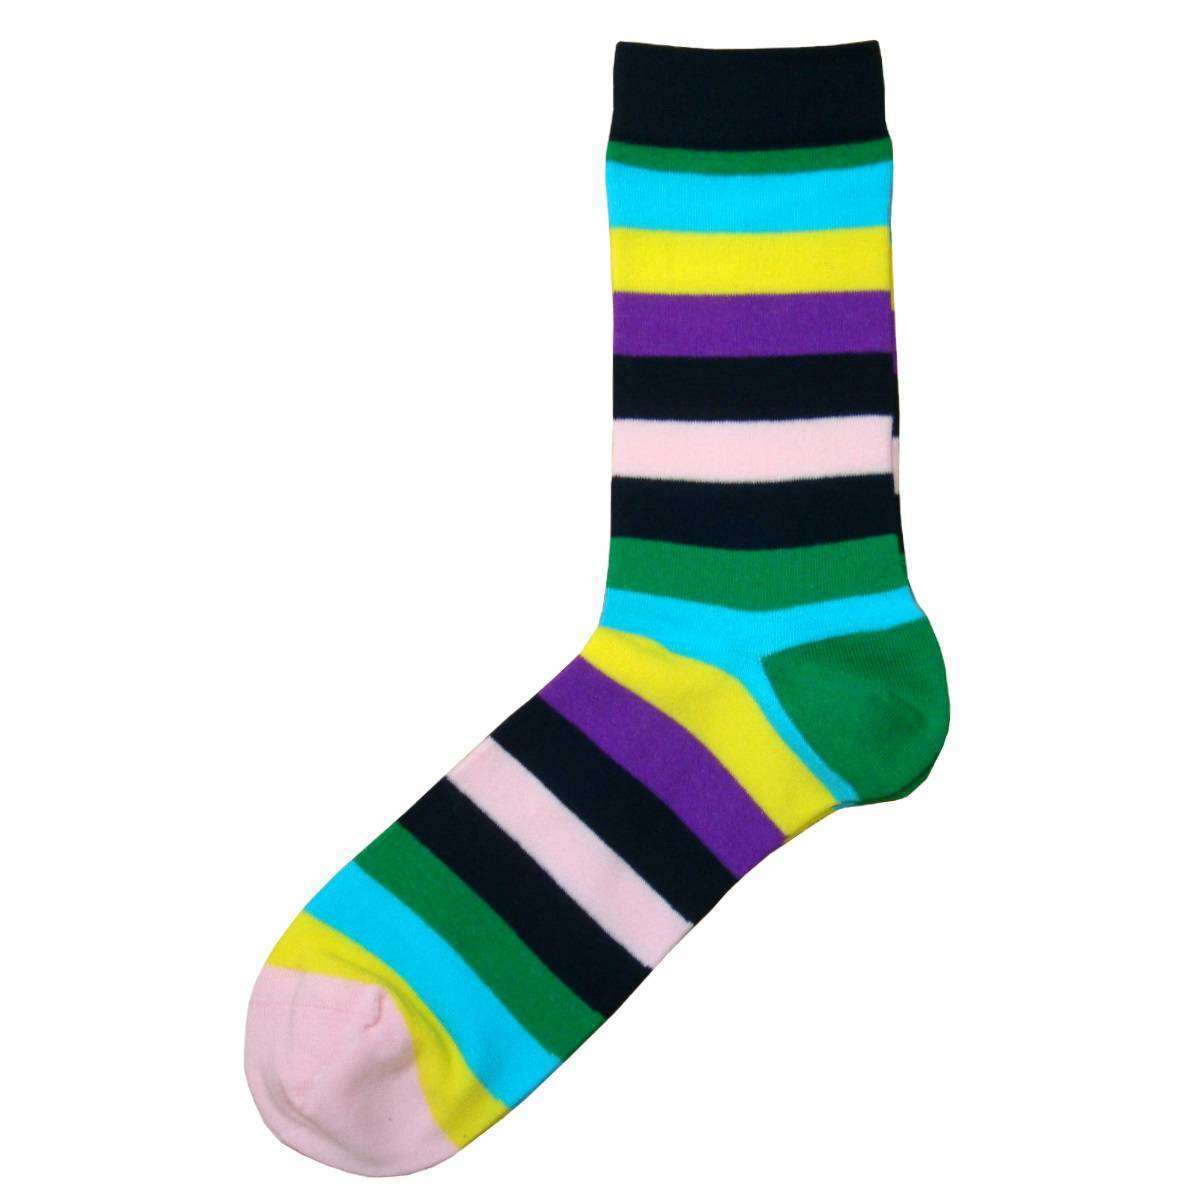 Bassin and Brown Multi Striped Socks - Multi-colour